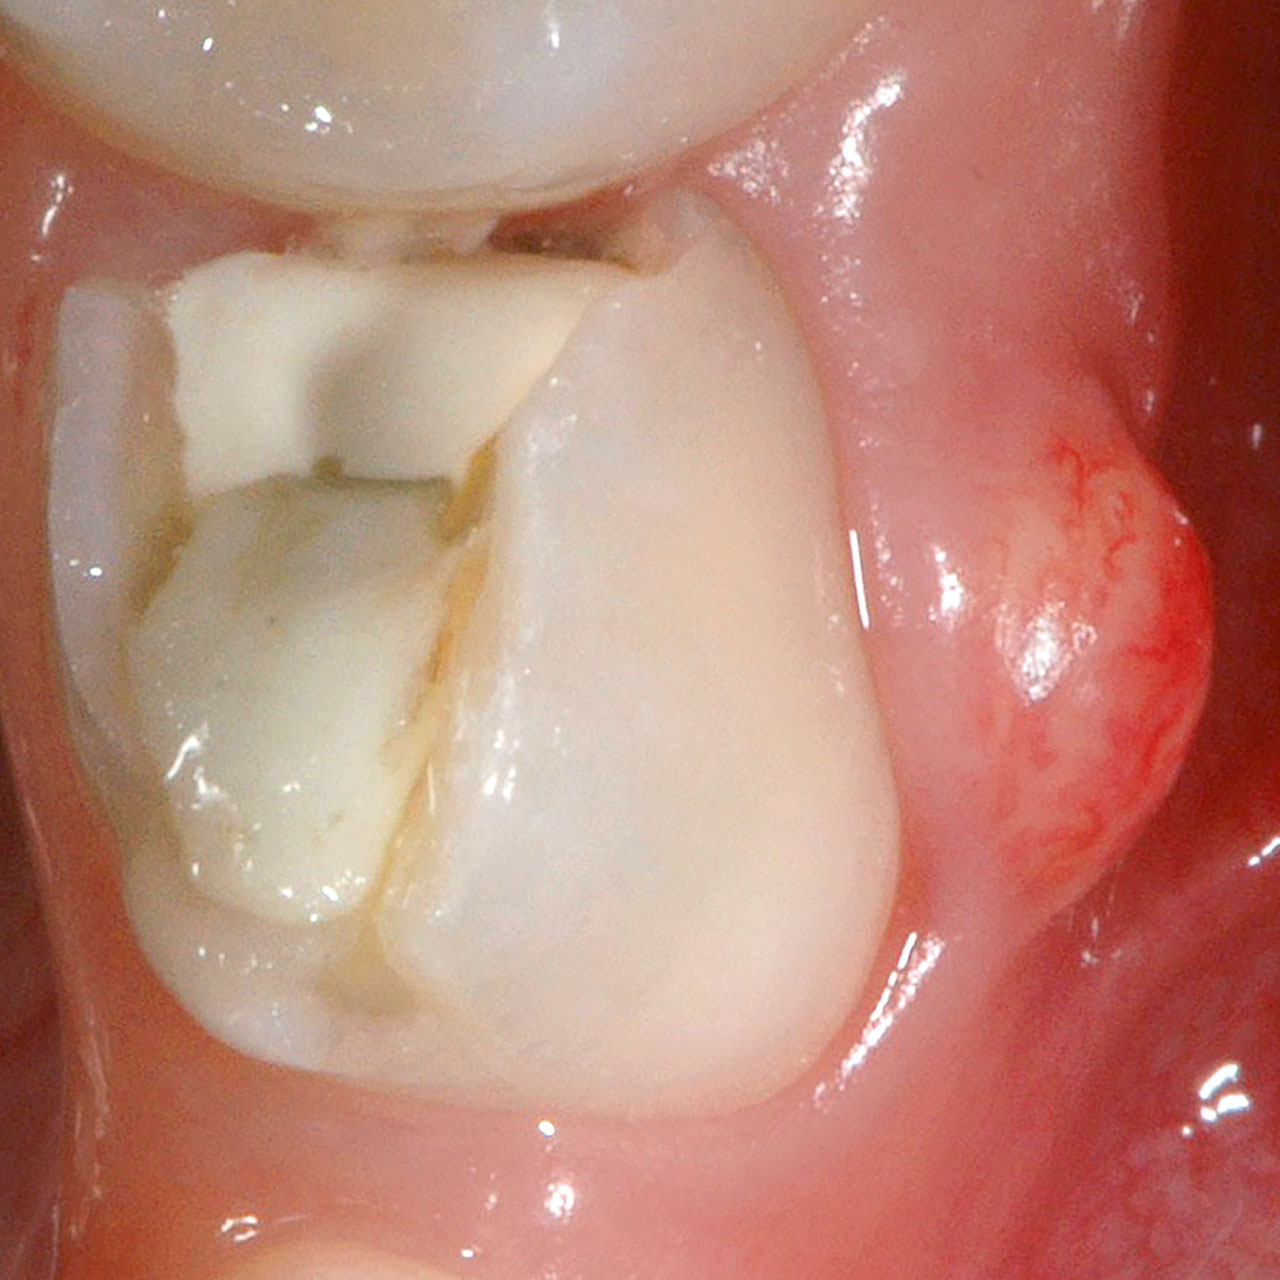 Abb. 5 Pusentleerung aus dem trepanierten Pulpakavum von Zahn 74 und rezidivierende Abszedierung infolge unterlassener Extraktion des Zahns als Kausaltherapie.